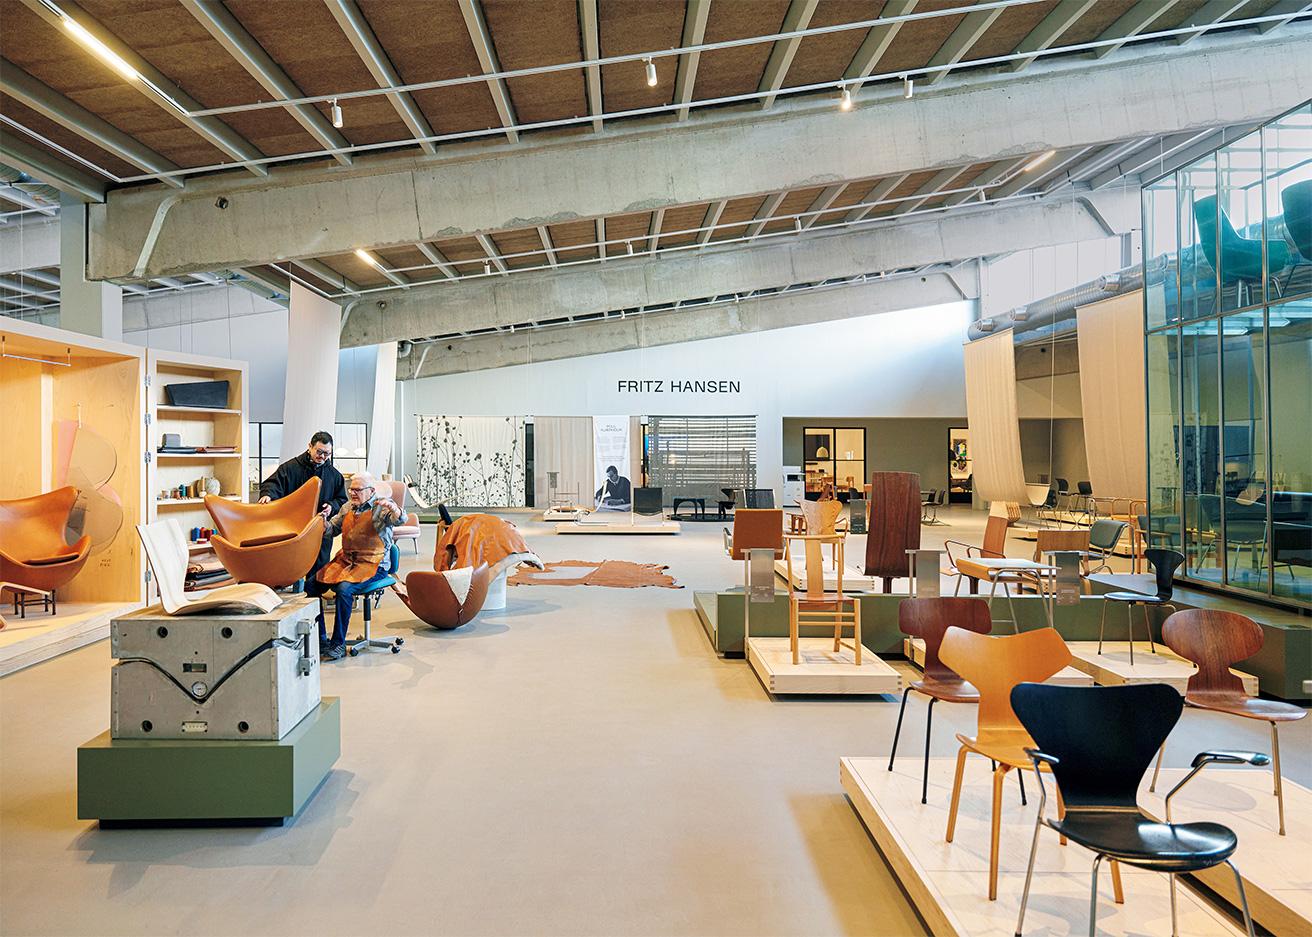 会社の歴史から始まり、ヤコブセンやPKなどの家具がデザイナー別に展示されているデザインホール。相澤さんが話しているのは《エッグチェア》の革張りエキスパートとして25年以上のキャリアを誇る職人のハンスさん。